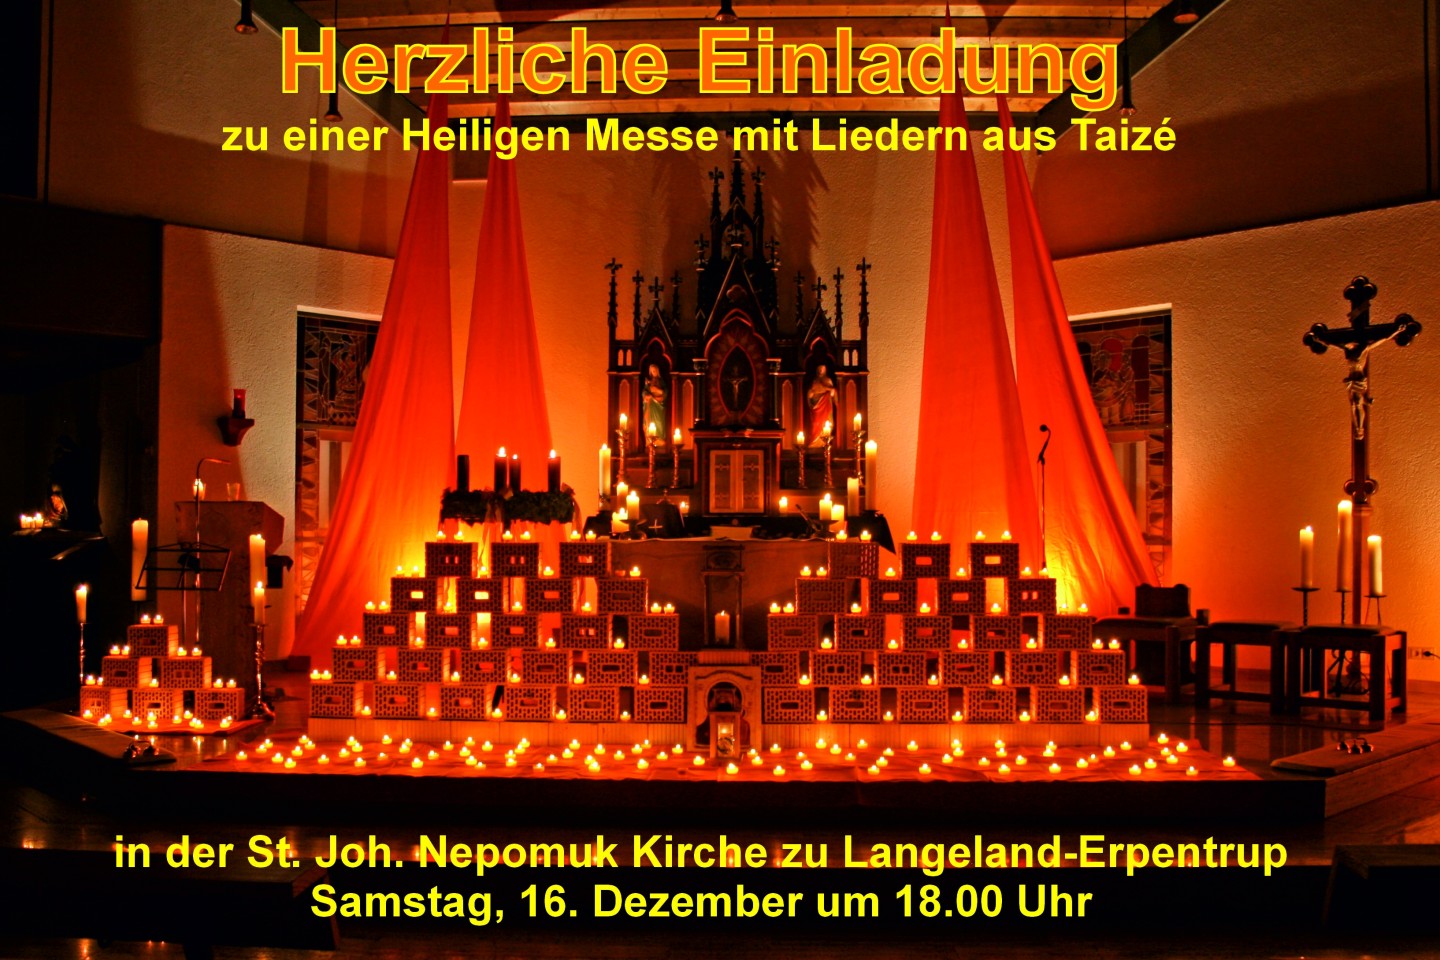 Am Samstag, 16. Dezember findet um 18.00 Uhr eine besondere Heilige Messe in der St. Joh. Nepomuk Kirche in Langeland-Erpentrup statt